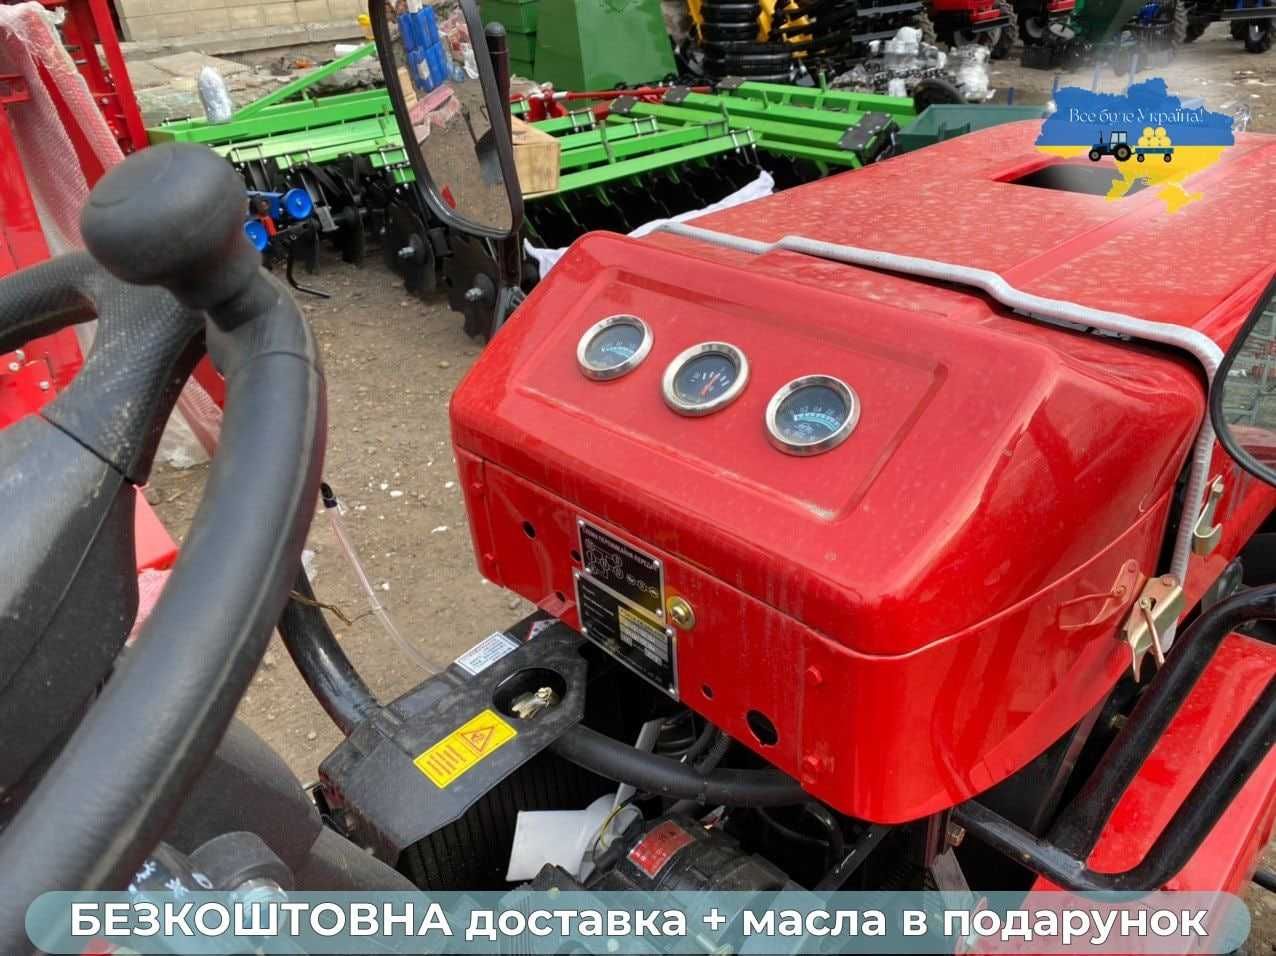 Трактор ШИФЕНГ 244 Мастер полный привод Доставка БЕСПЛАТНО ЗИП